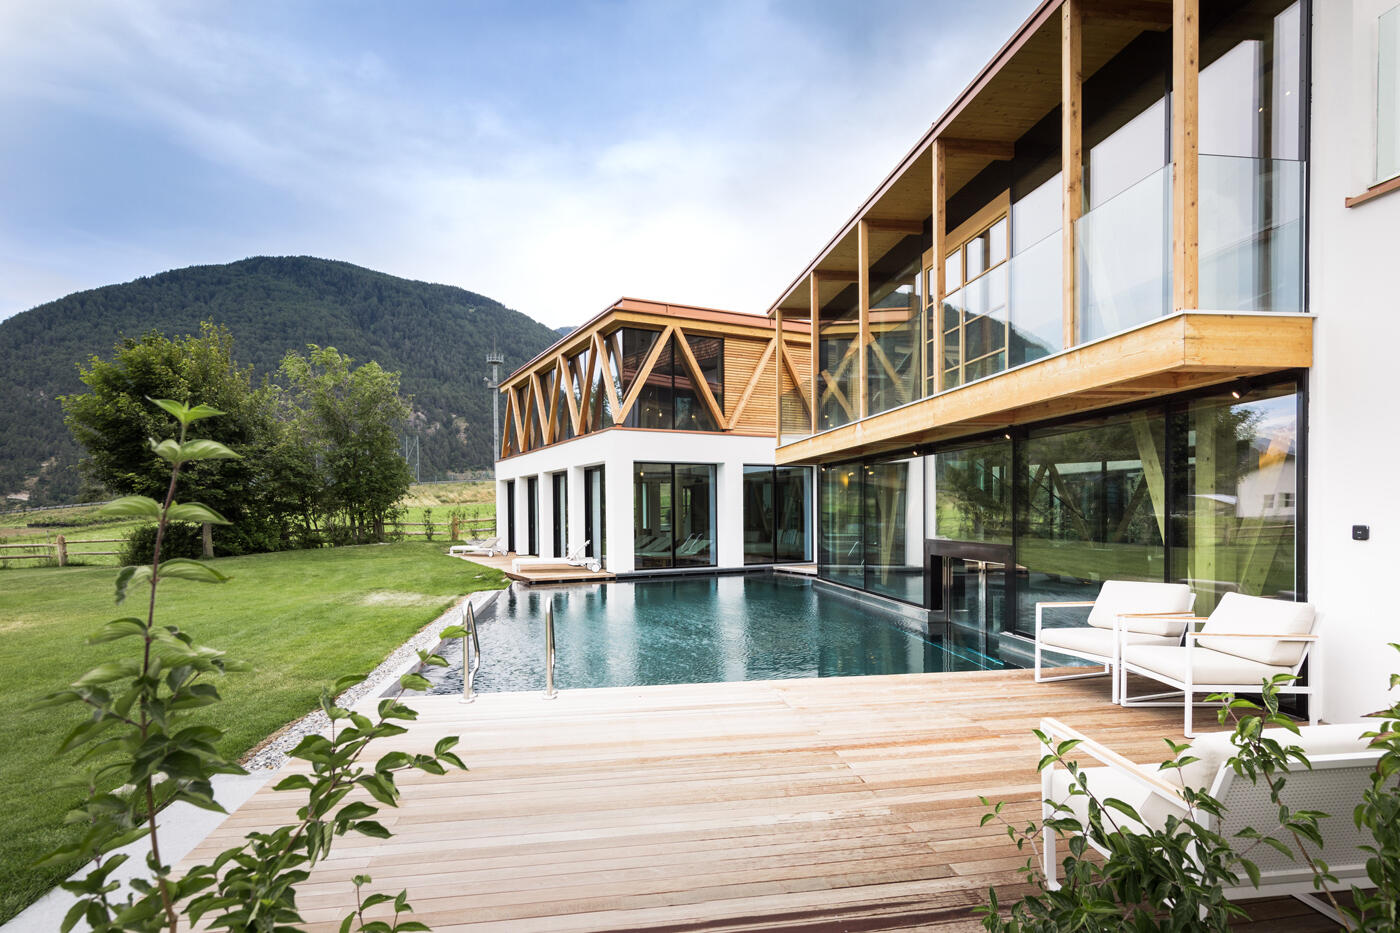 Verglastes Holzhaus mit Pool und Hölzerner Terrasse.